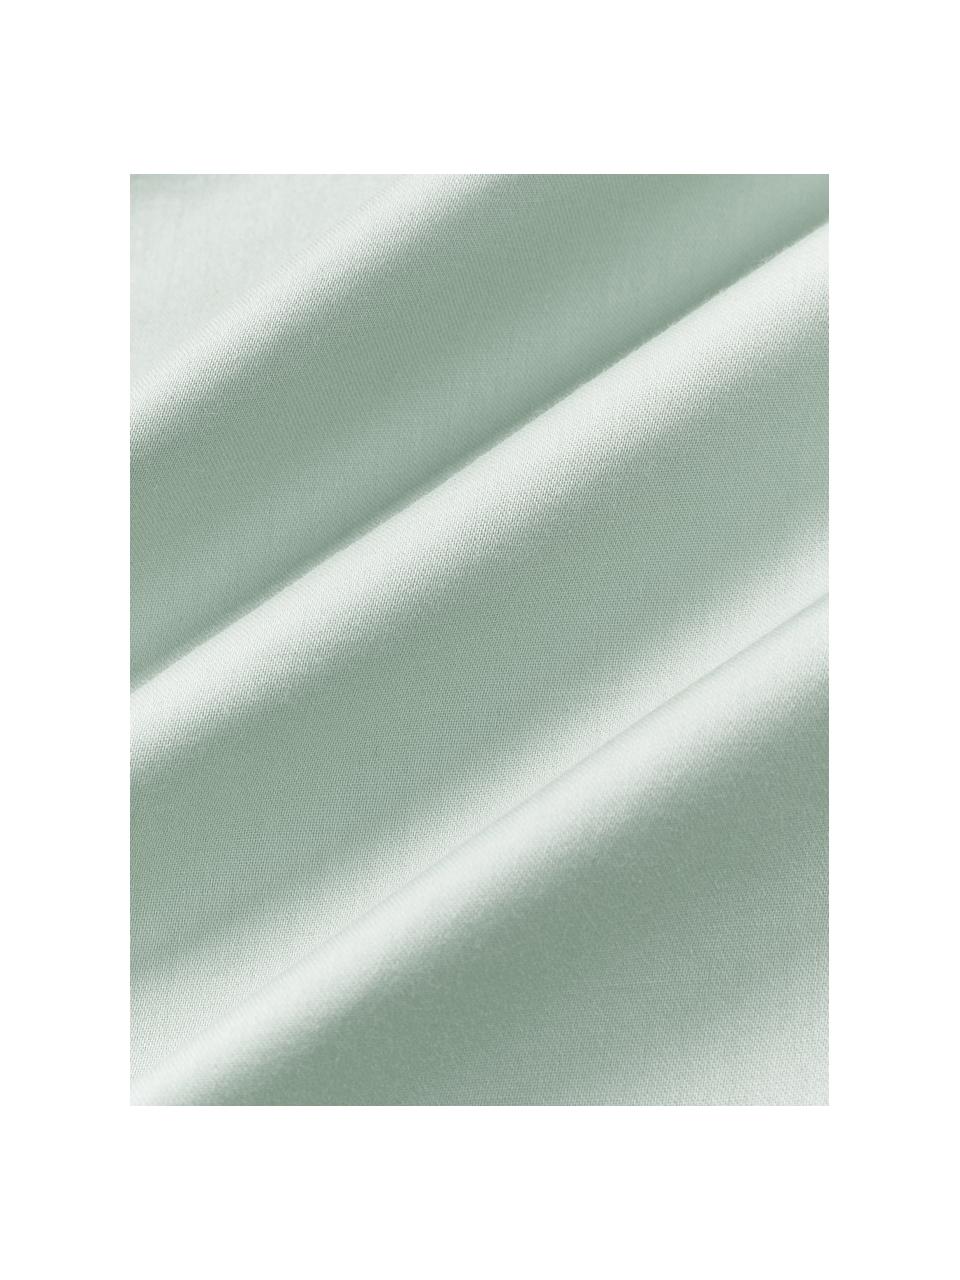 Poszwa na kołdrę z satyny bawełnianej Comfort, Szałwiowy zielony, S 200 x D 200 cm